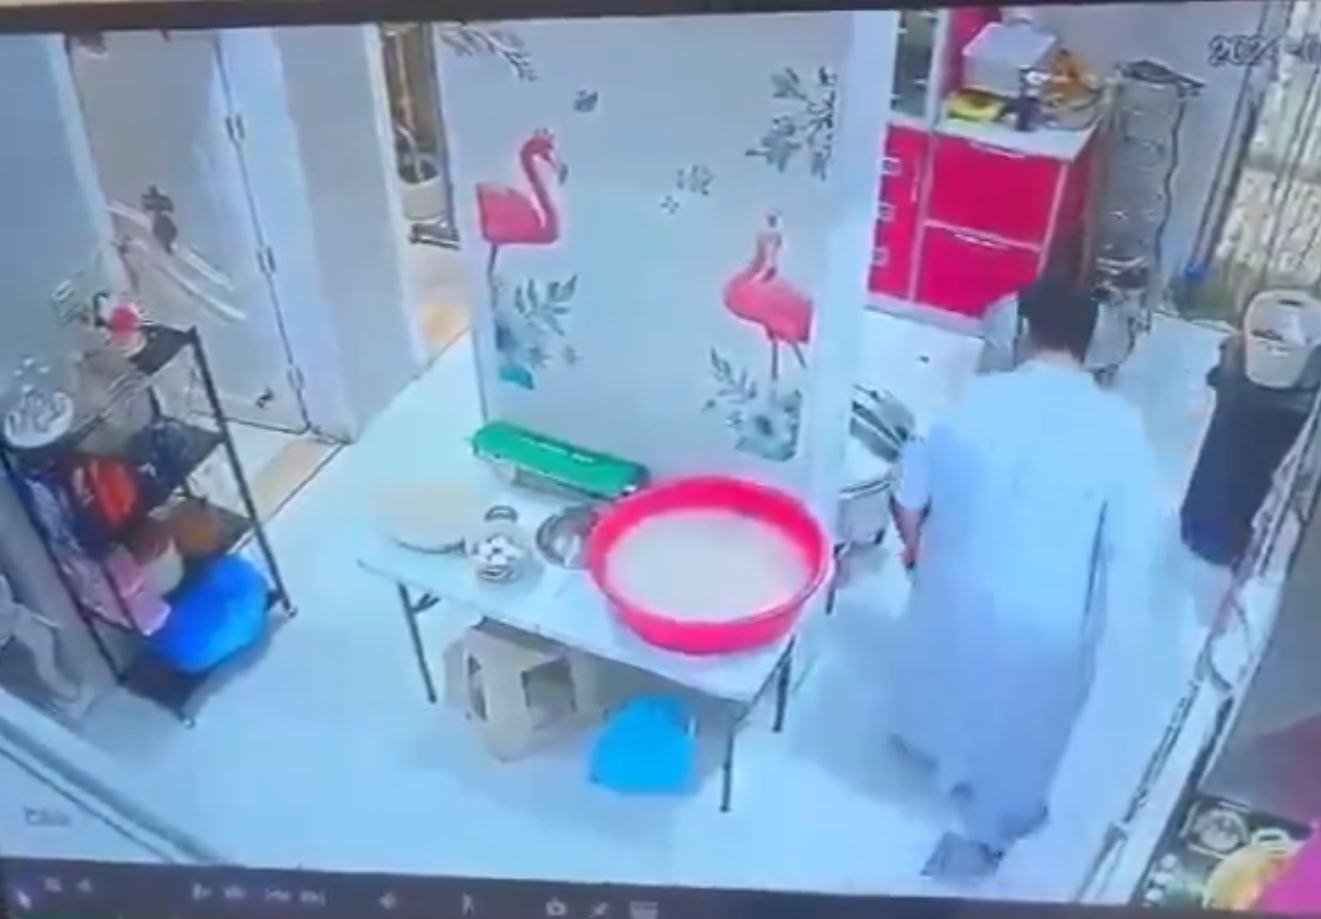 السعودية.. مقطع فيديو يوثق لحظة انفجار "قدر ضغط" في منزل وتسببه في كارثة لصاحبه (فيديو)